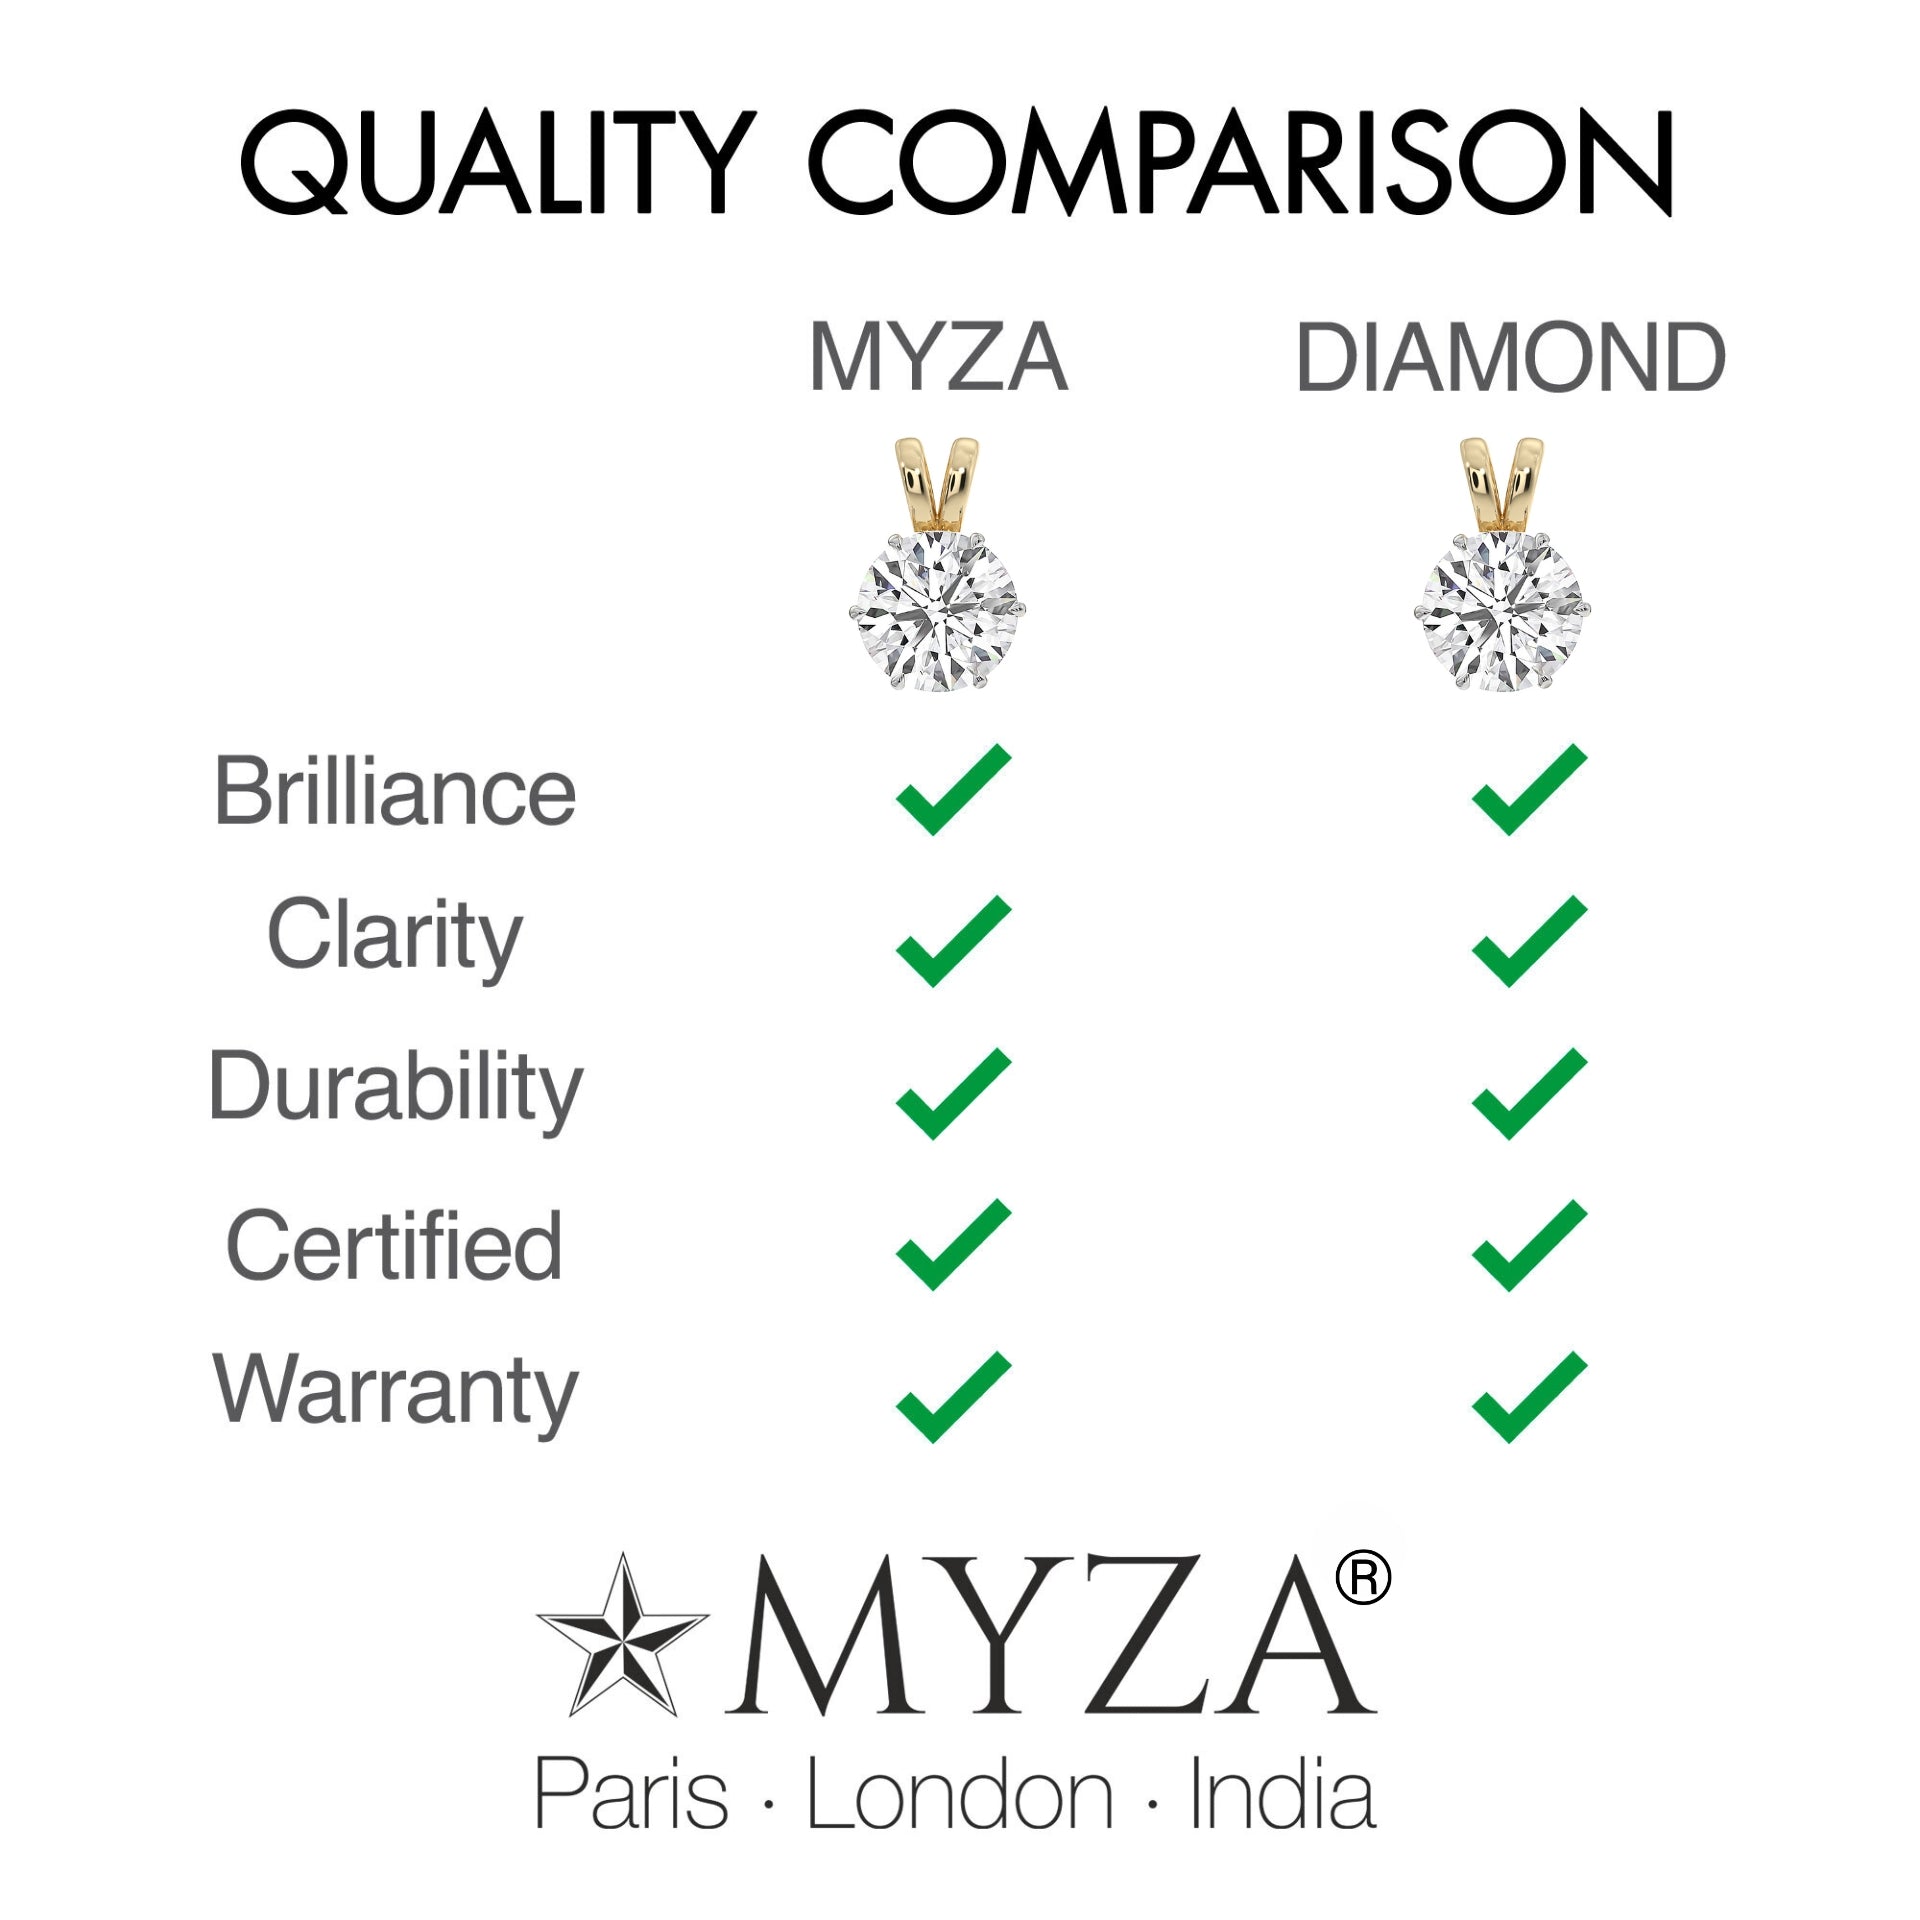 1-Carat MYZA Hallmark Gold Pendant - MYZA 